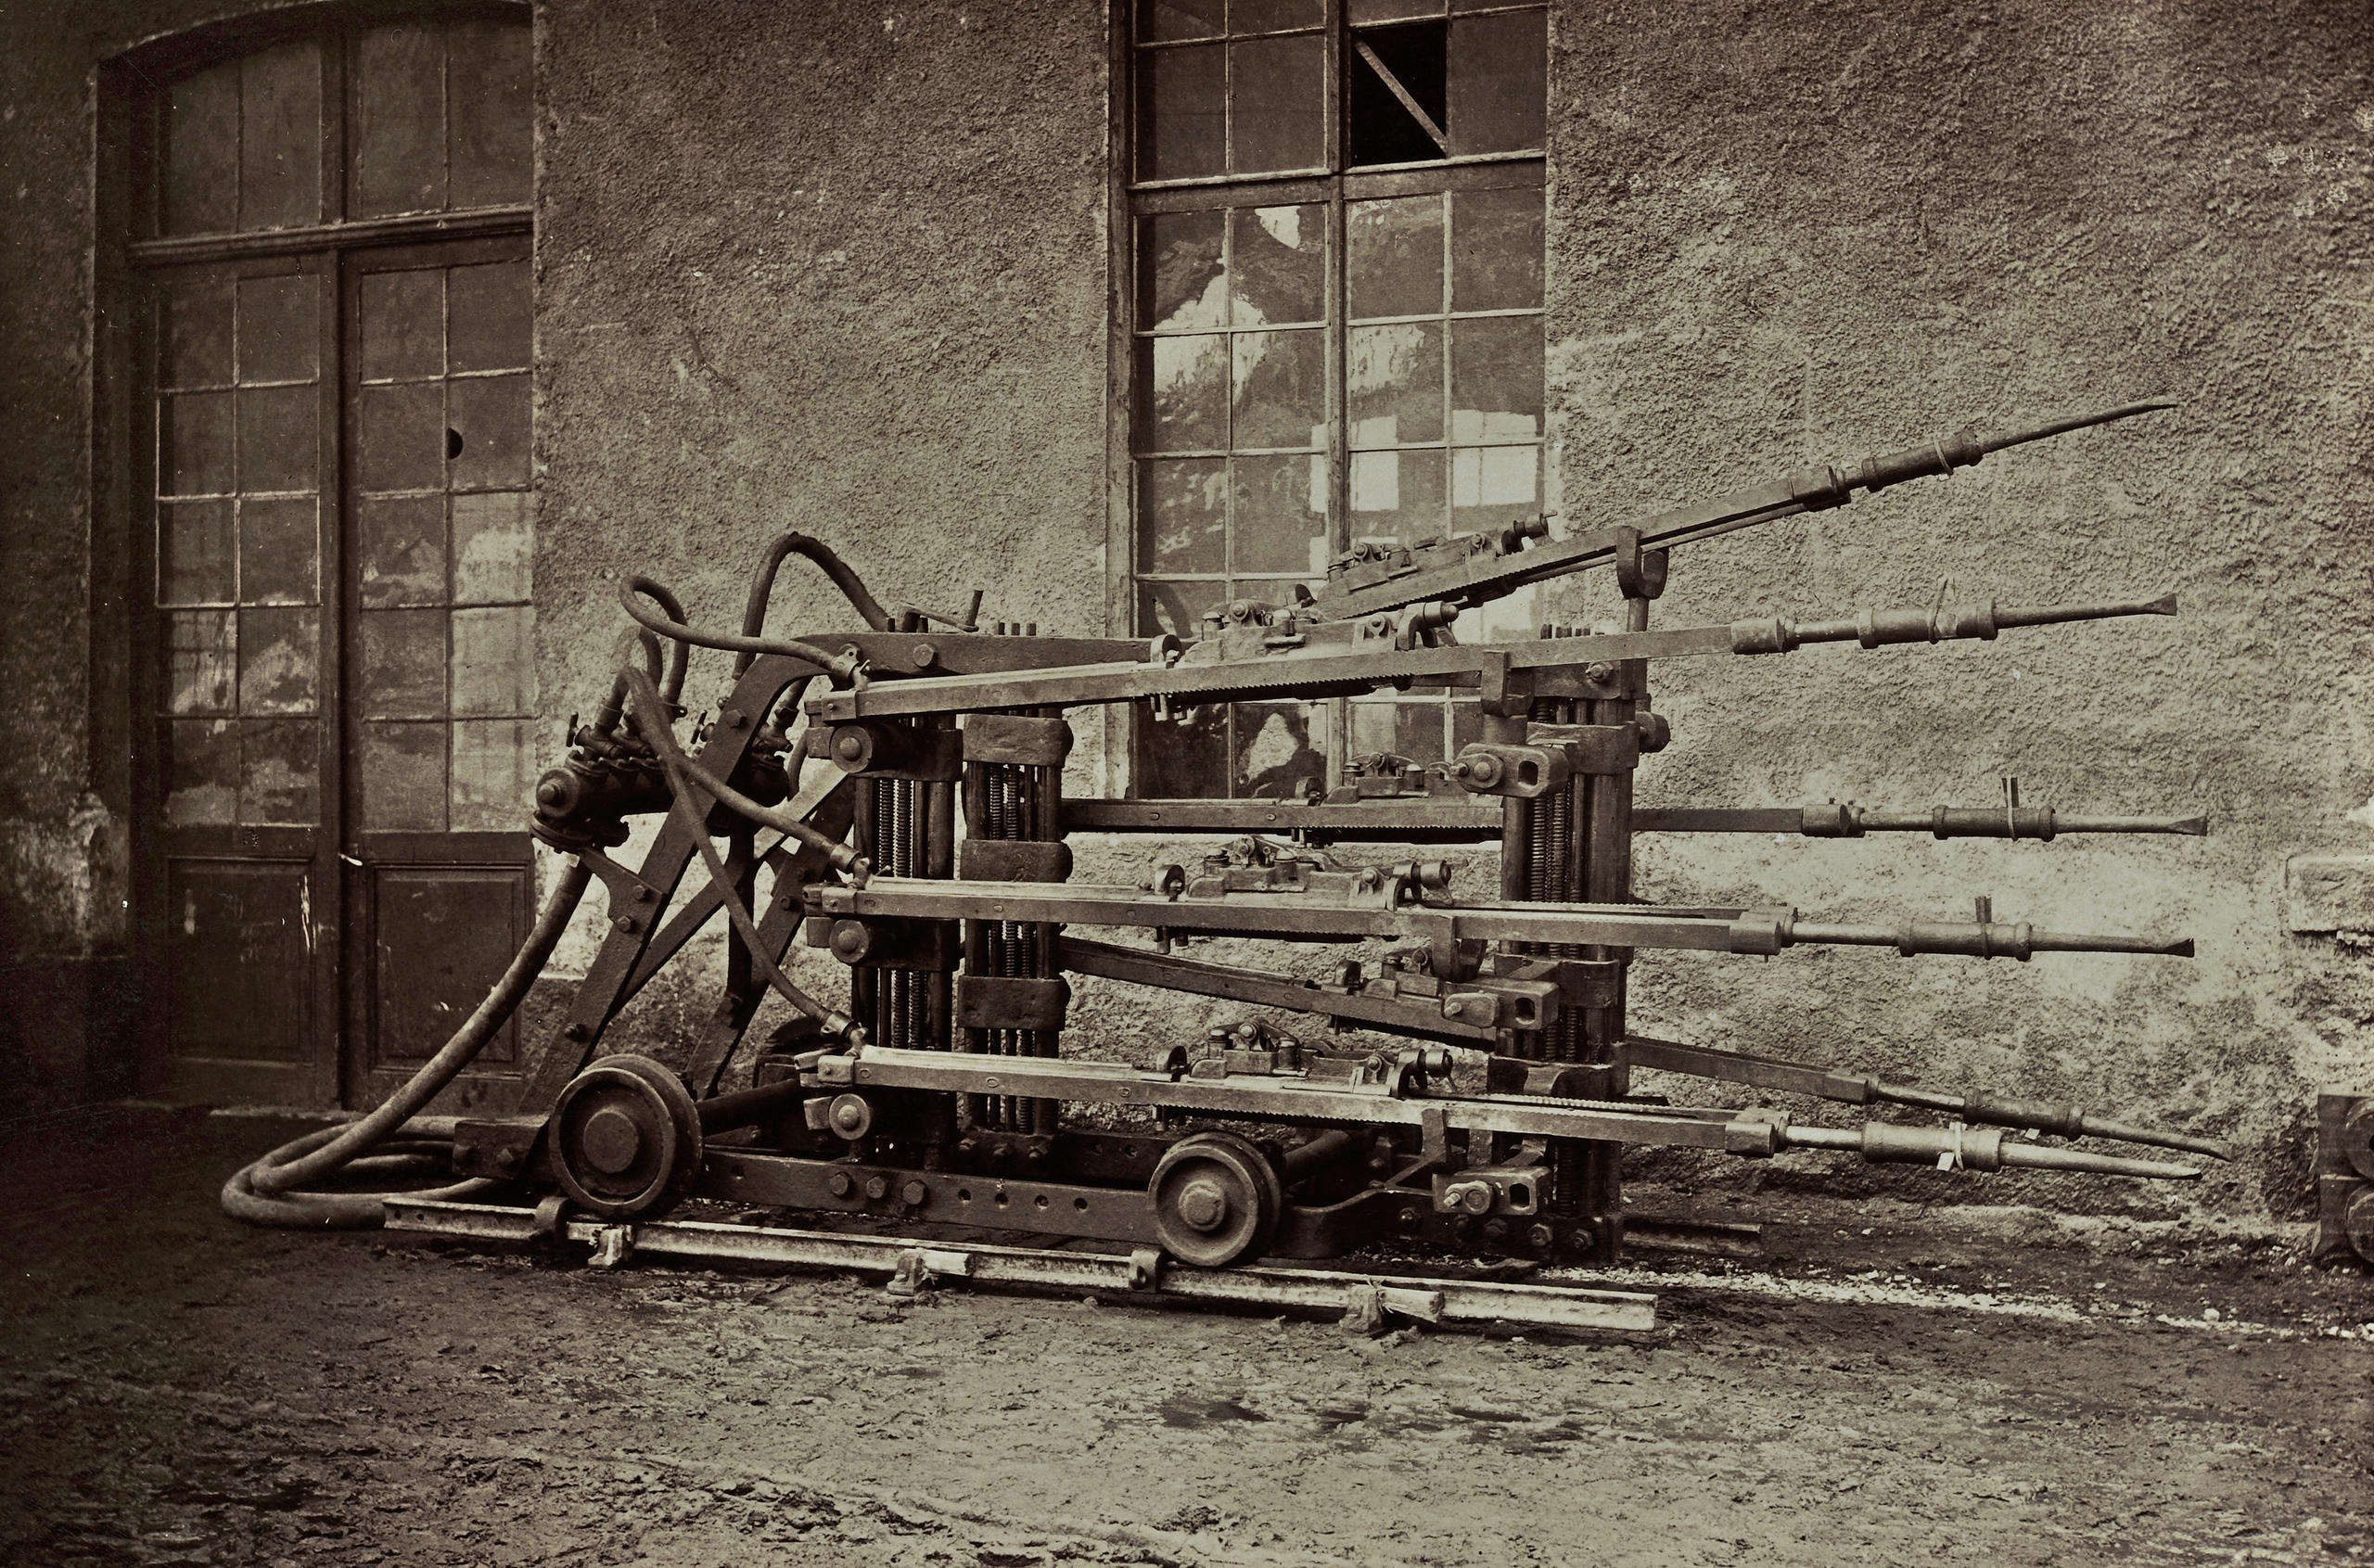 Bohrmaschine, welche für den Gotthard-Tunnelbau verwendet wurde, um 1872-1882